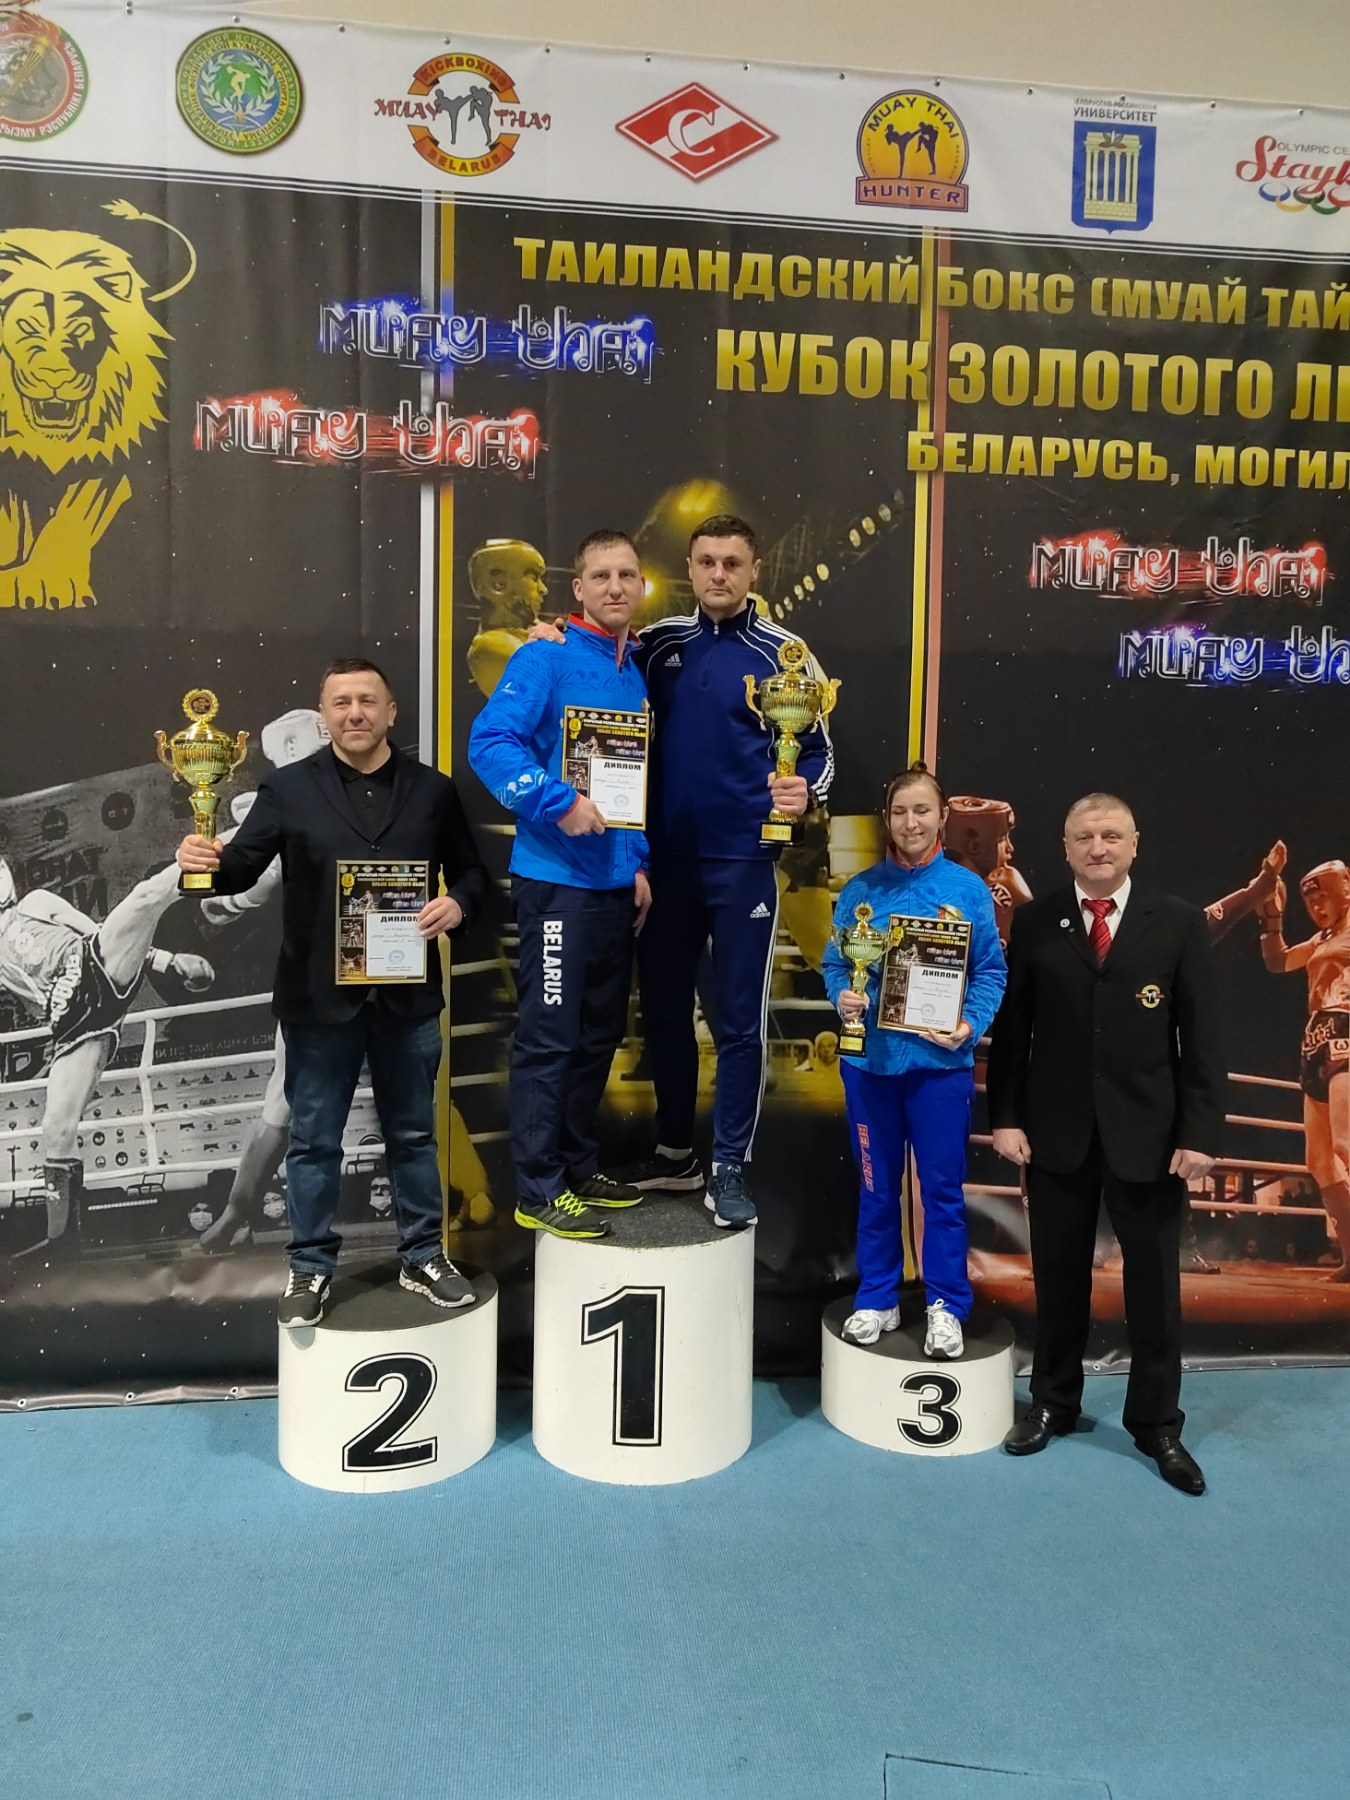 На этих выходных прошли соревнования в Могилёве "Кубок золотого льва" (19-22 января)